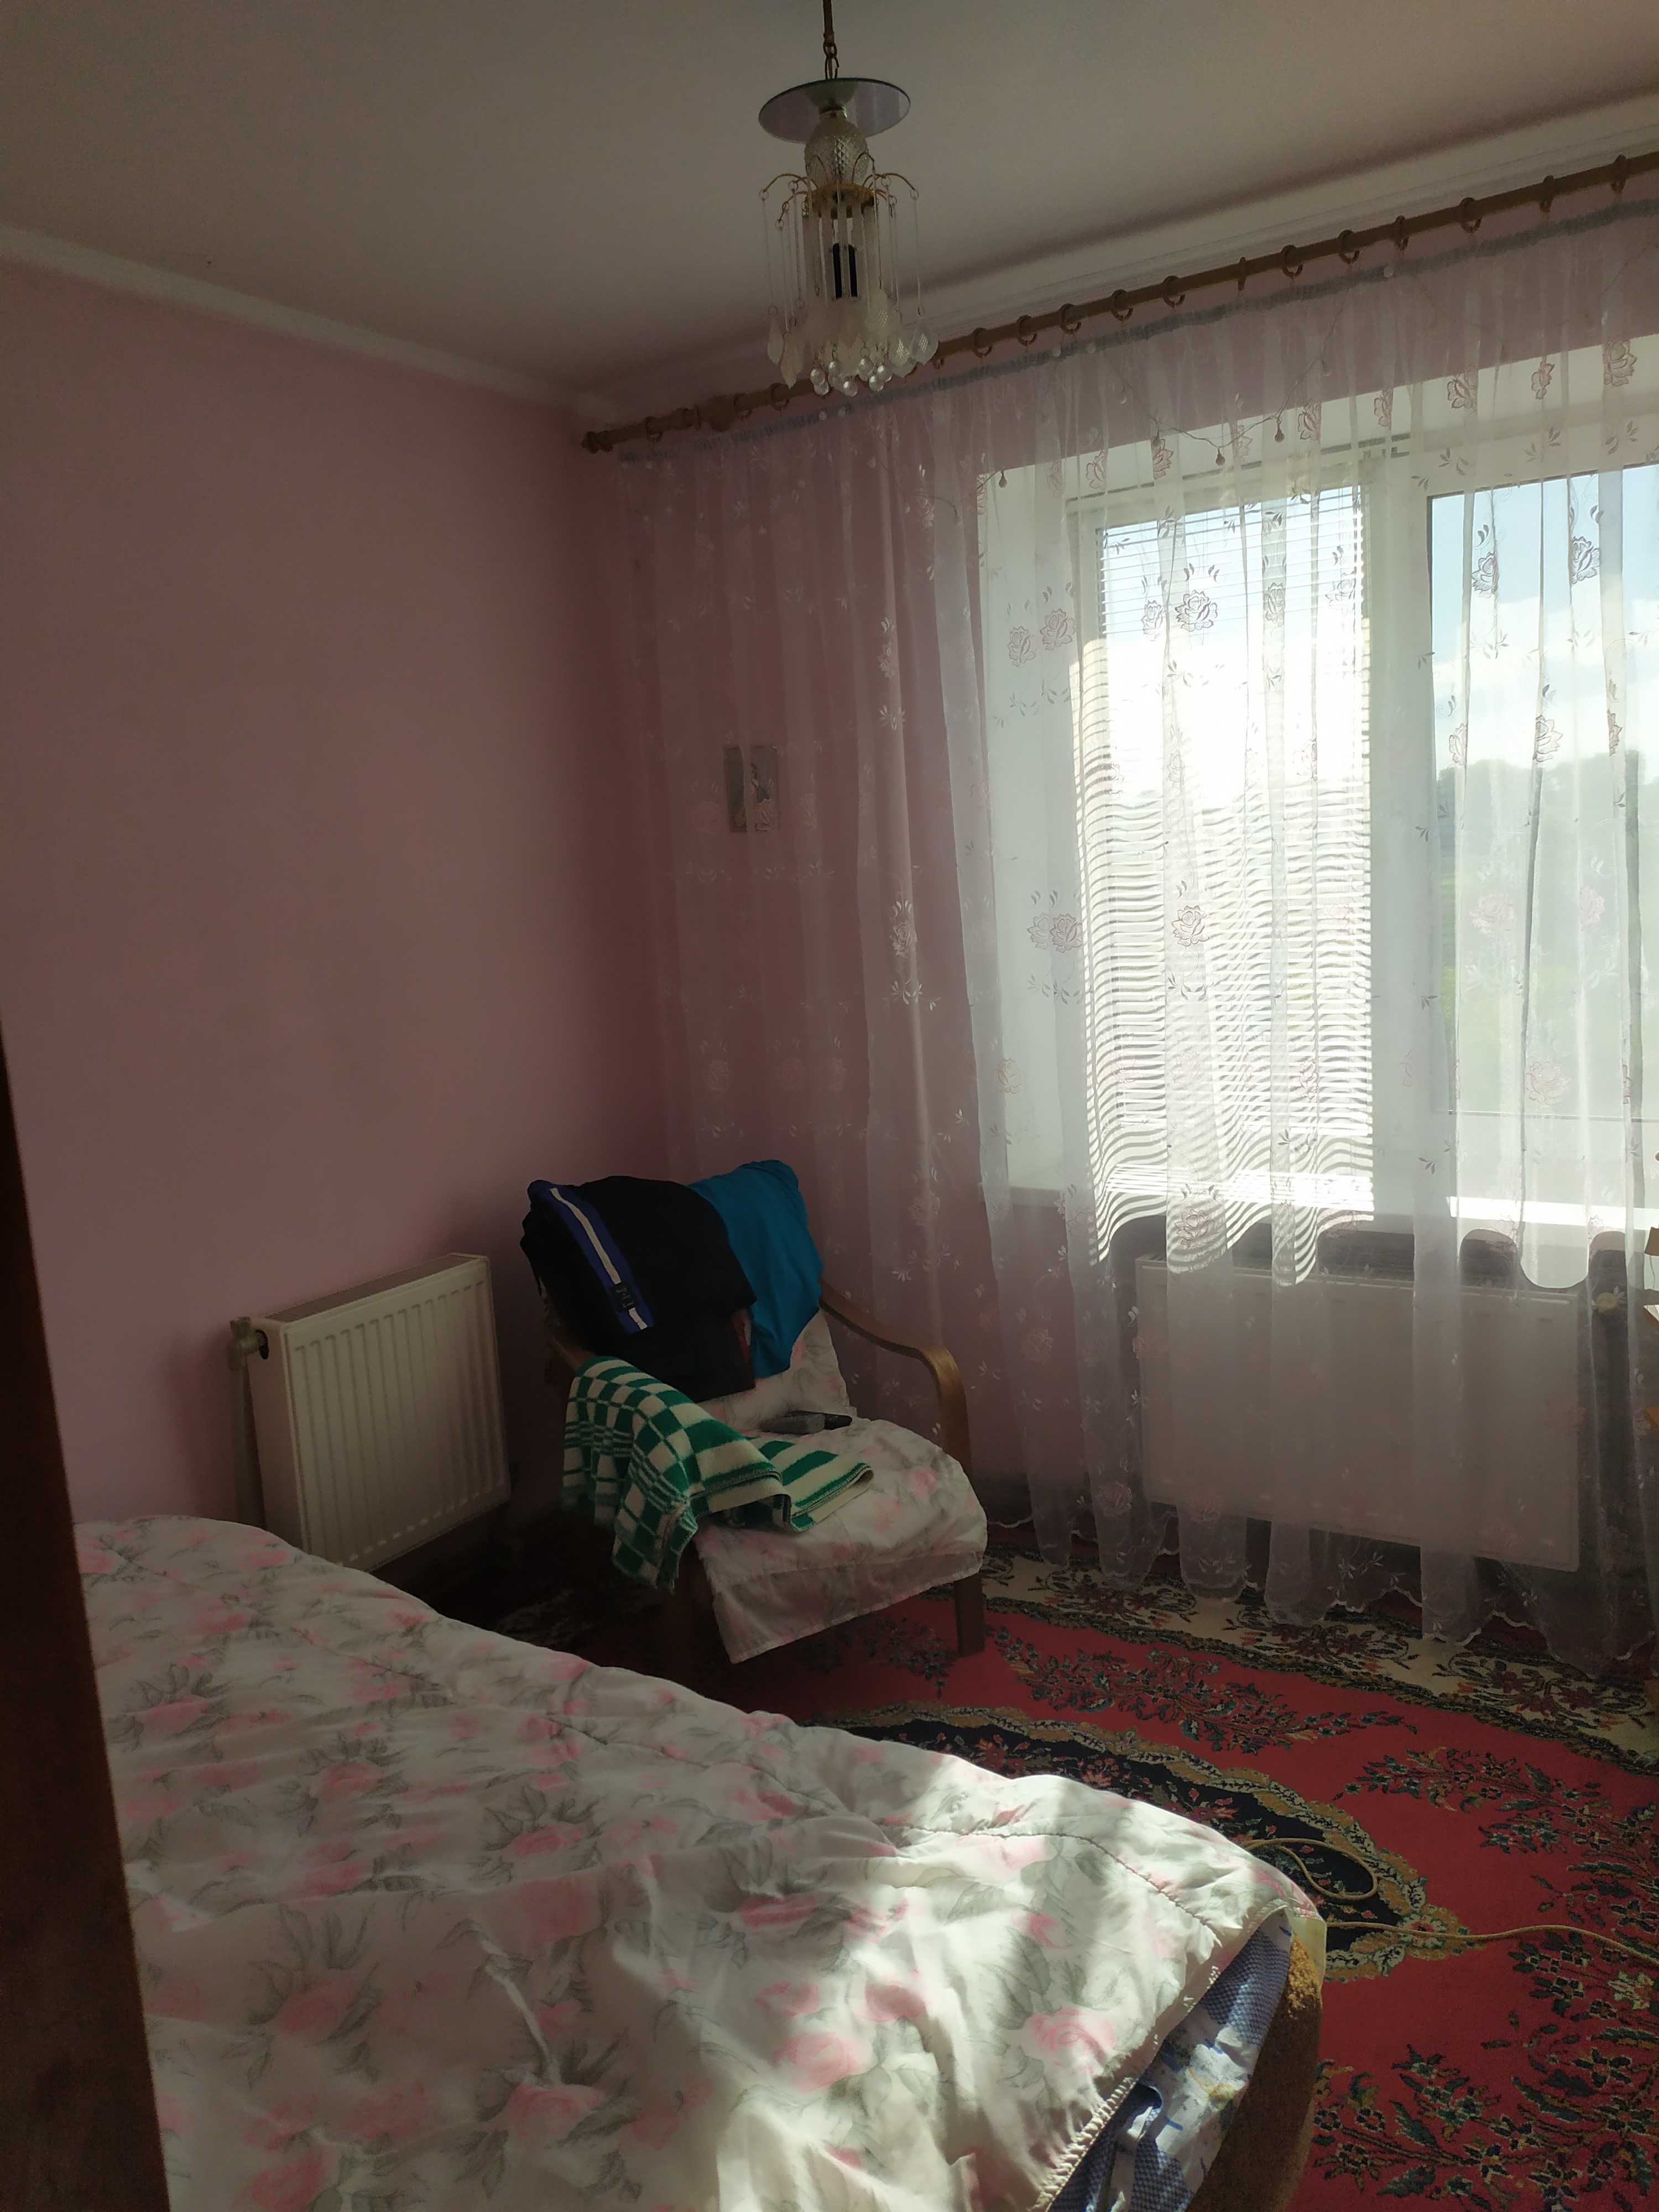 Квартира 3-х кімнатна Овруч Житомирська обл